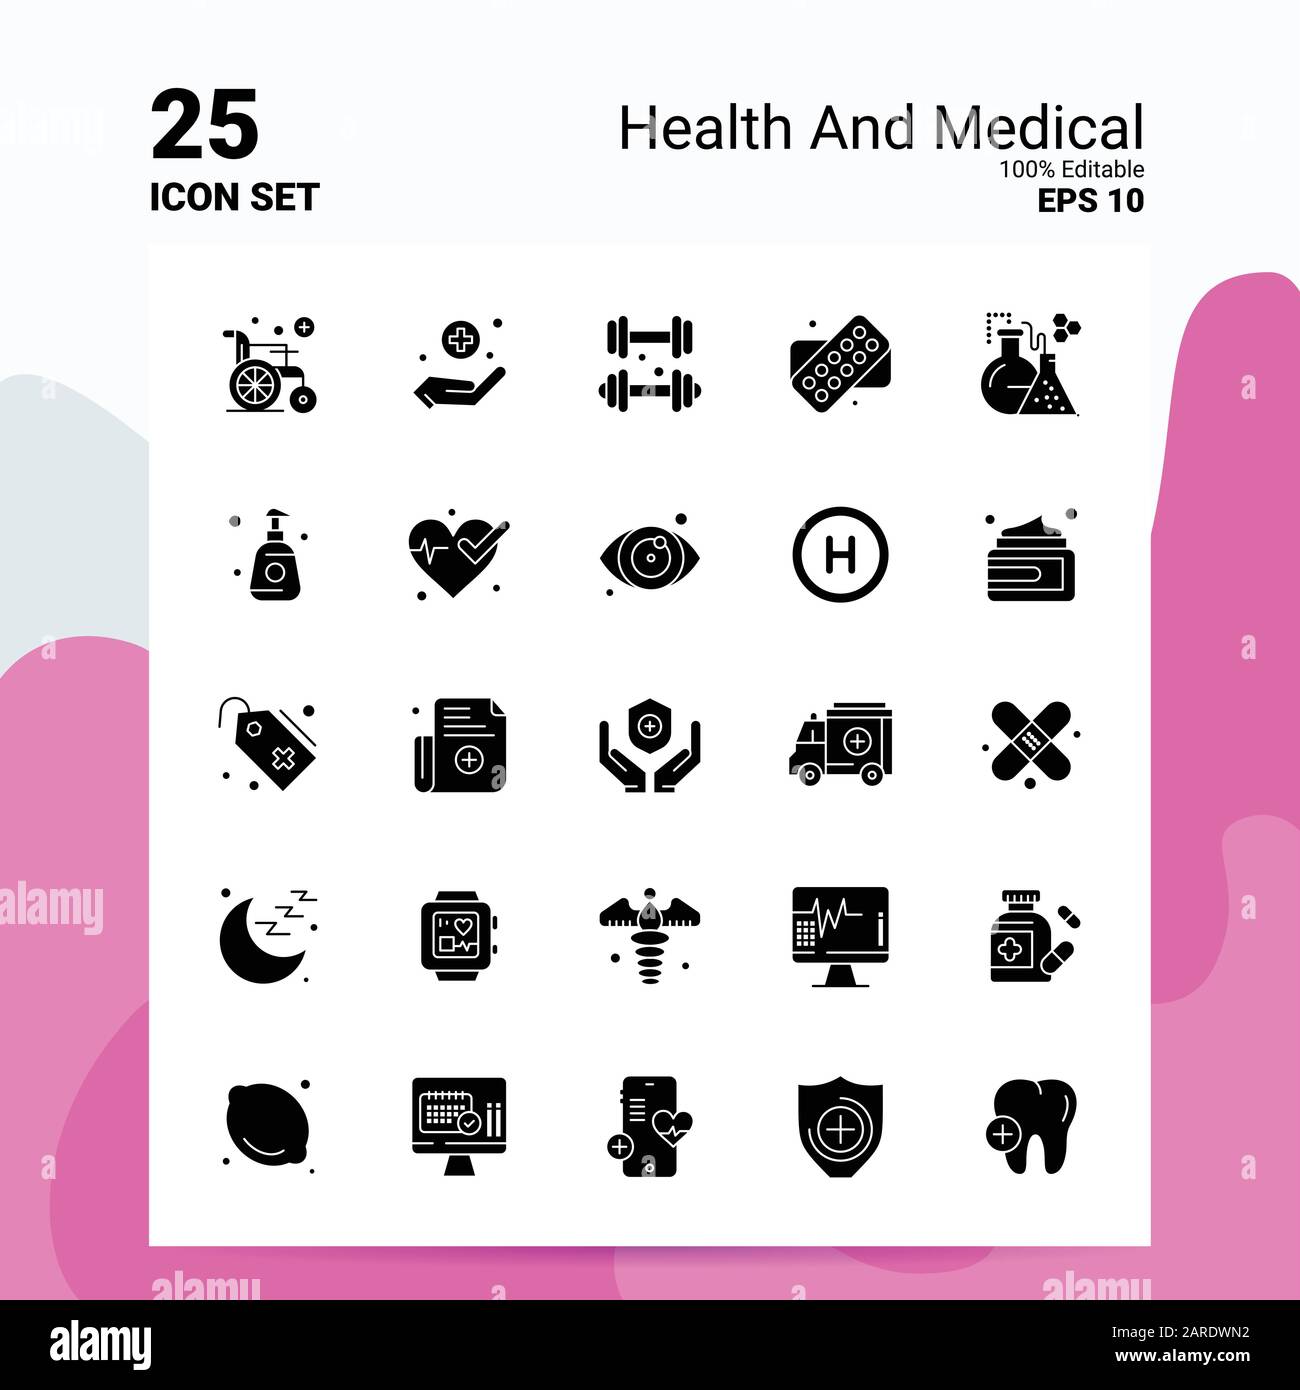 25 Conjunto De Iconos Médicos Y Sanitarios Archivos Eps 10 Editables Al 100 Concepto De 0702